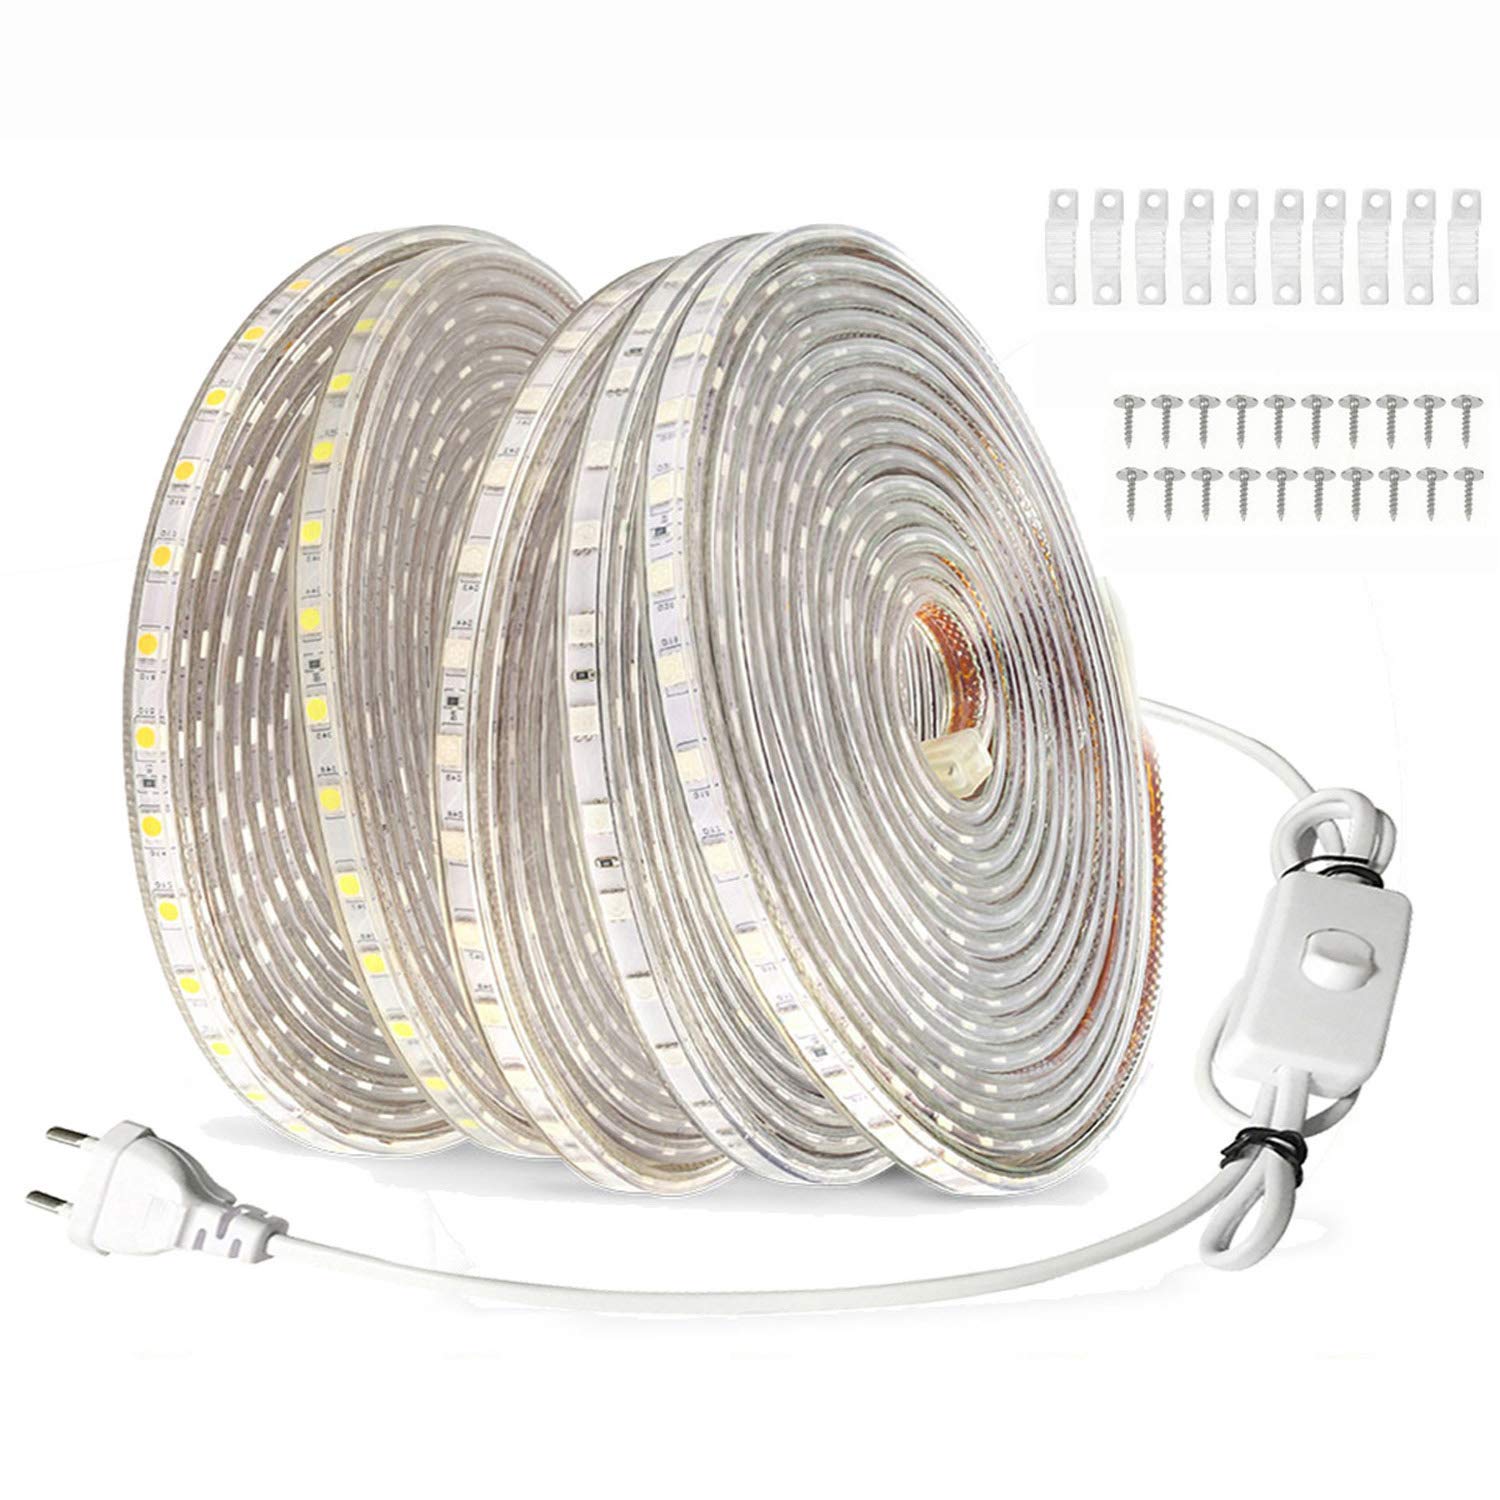 FOLGEMIR 25m LED Band mit Schalter - Kalt Weiß, 220V 230V Beleuchtung, 60 Leds/m, IP65 wasserdicht Lichtschlauch (Kalt Weiß, 25m)